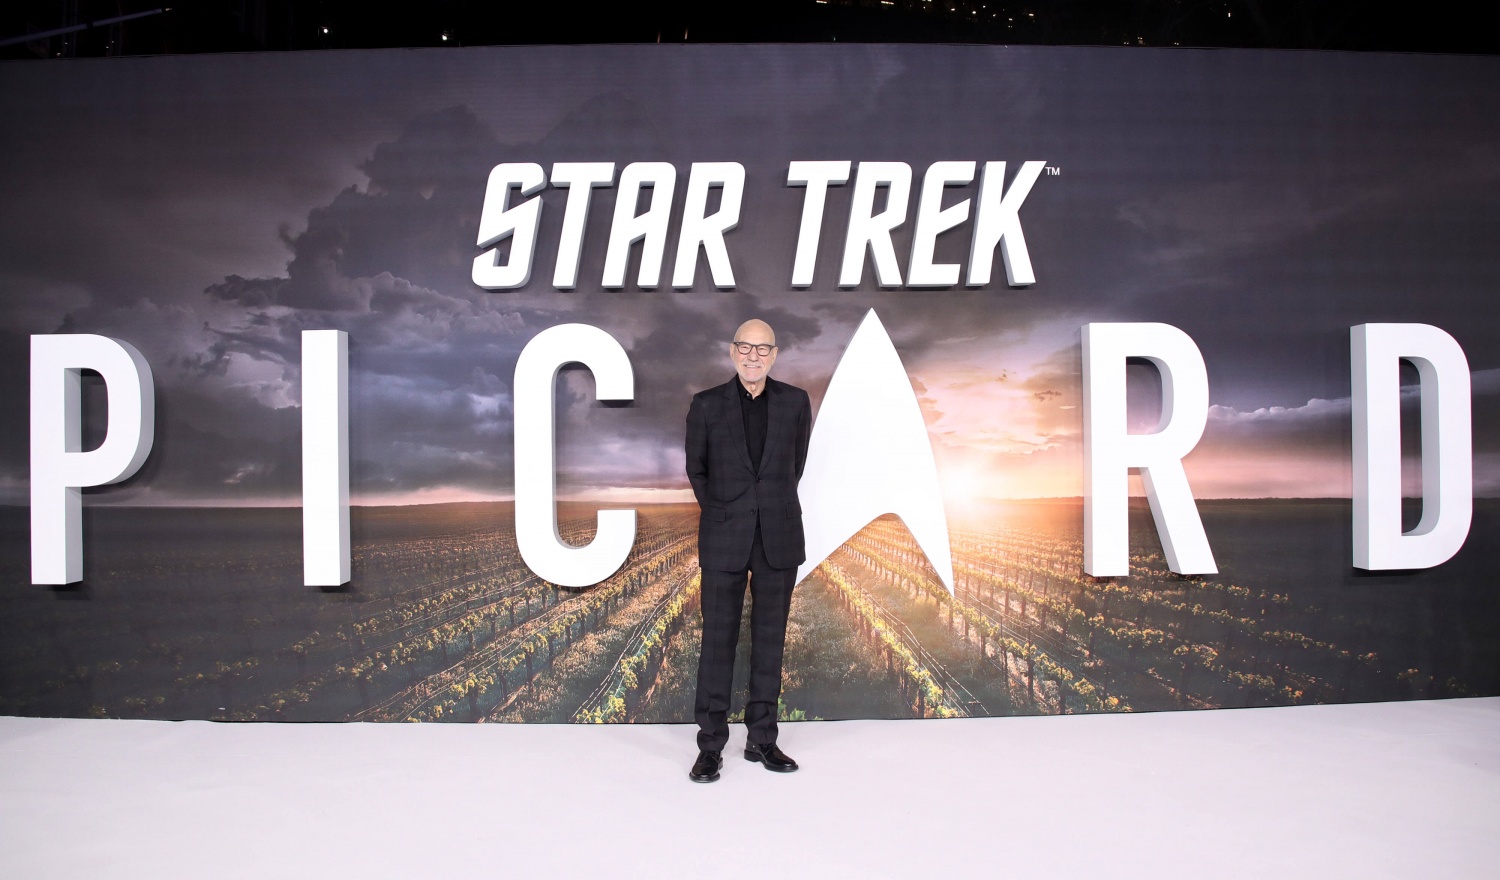 Star Trek Picard" UK Premiere - Red Carpet Arrivals People: Sir Patrick Stewart